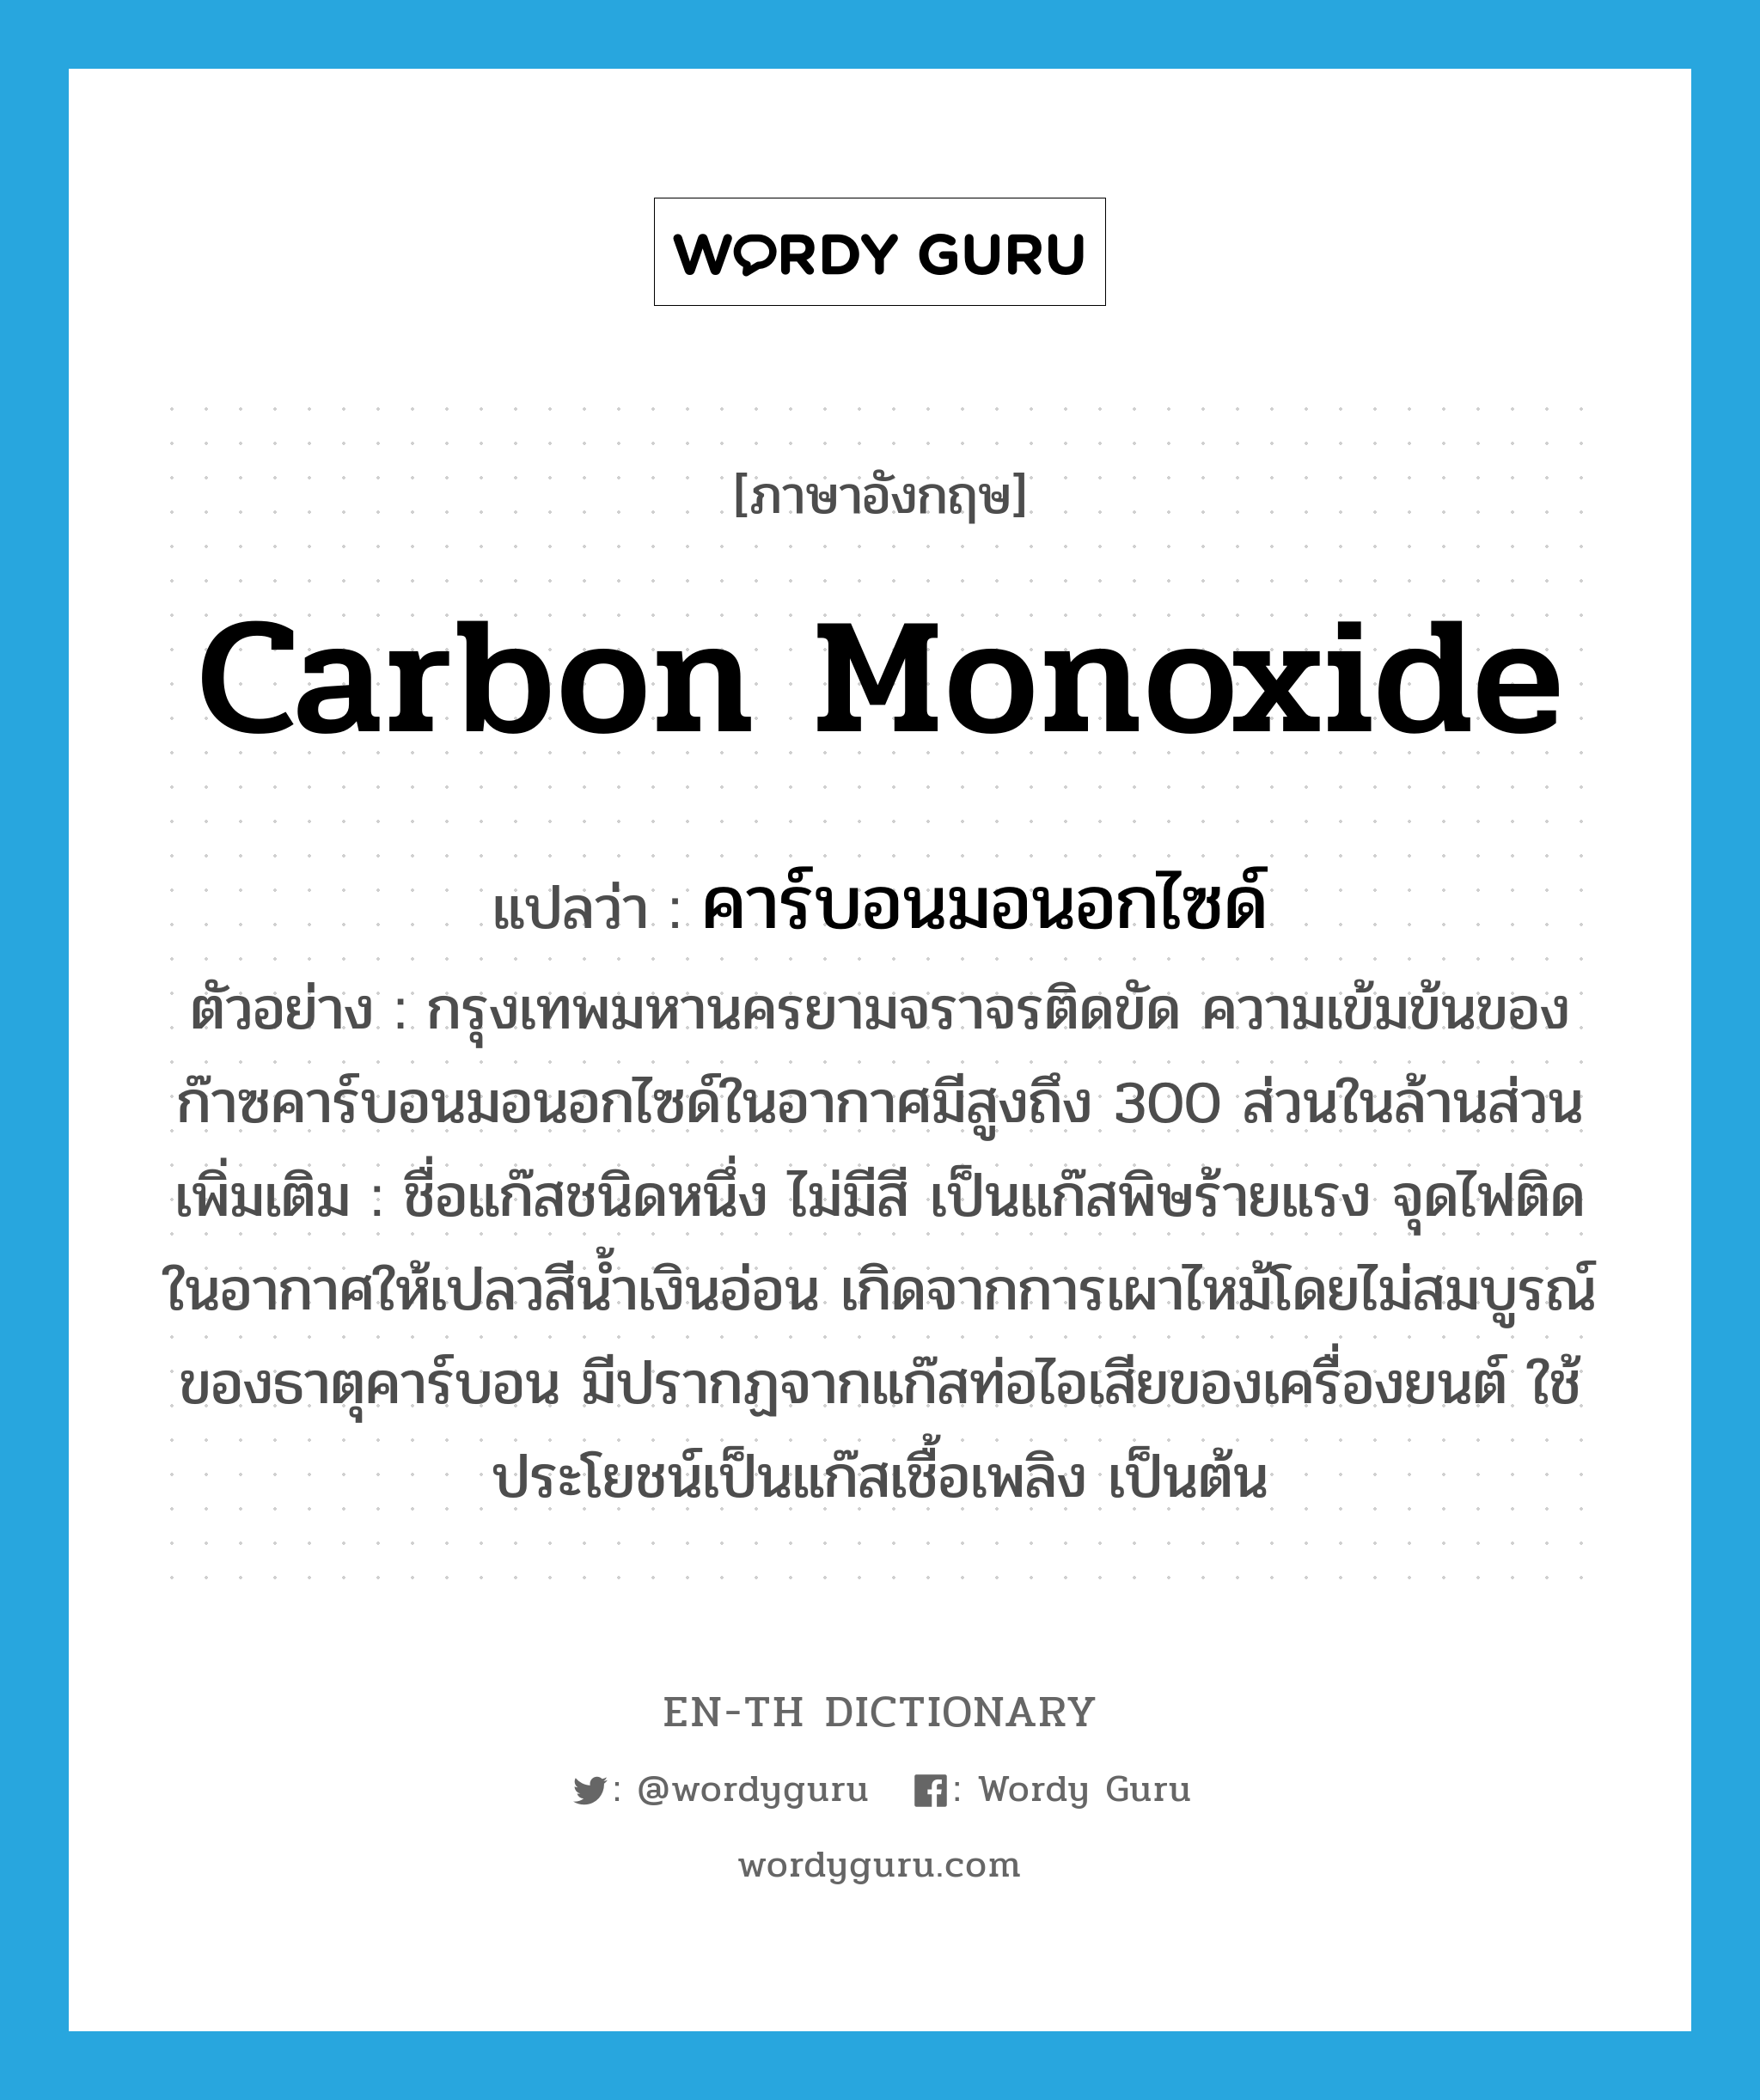 carbon monoxide แปลว่า?, คำศัพท์ภาษาอังกฤษ carbon monoxide แปลว่า คาร์บอนมอนอกไซด์ ประเภท N ตัวอย่าง กรุงเทพมหานครยามจราจรติดขัด ความเข้มข้นของก๊าซคาร์บอนมอนอกไซด์ในอากาศมีสูงถึง 300 ส่วนในล้านส่วน เพิ่มเติม ชื่อแก๊สชนิดหนึ่ง ไม่มีสี เป็นแก๊สพิษร้ายแรง จุดไฟติดในอากาศให้เปลวสีน้ำเงินอ่อน เกิดจากการเผาไหม้โดยไม่สมบูรณ์ของธาตุคาร์บอน มีปรากฏจากแก๊สท่อไอเสียของเครื่องยนต์ ใช้ประโยชน์เป็นแก๊สเชื้อเพลิง เป็นต้น หมวด N